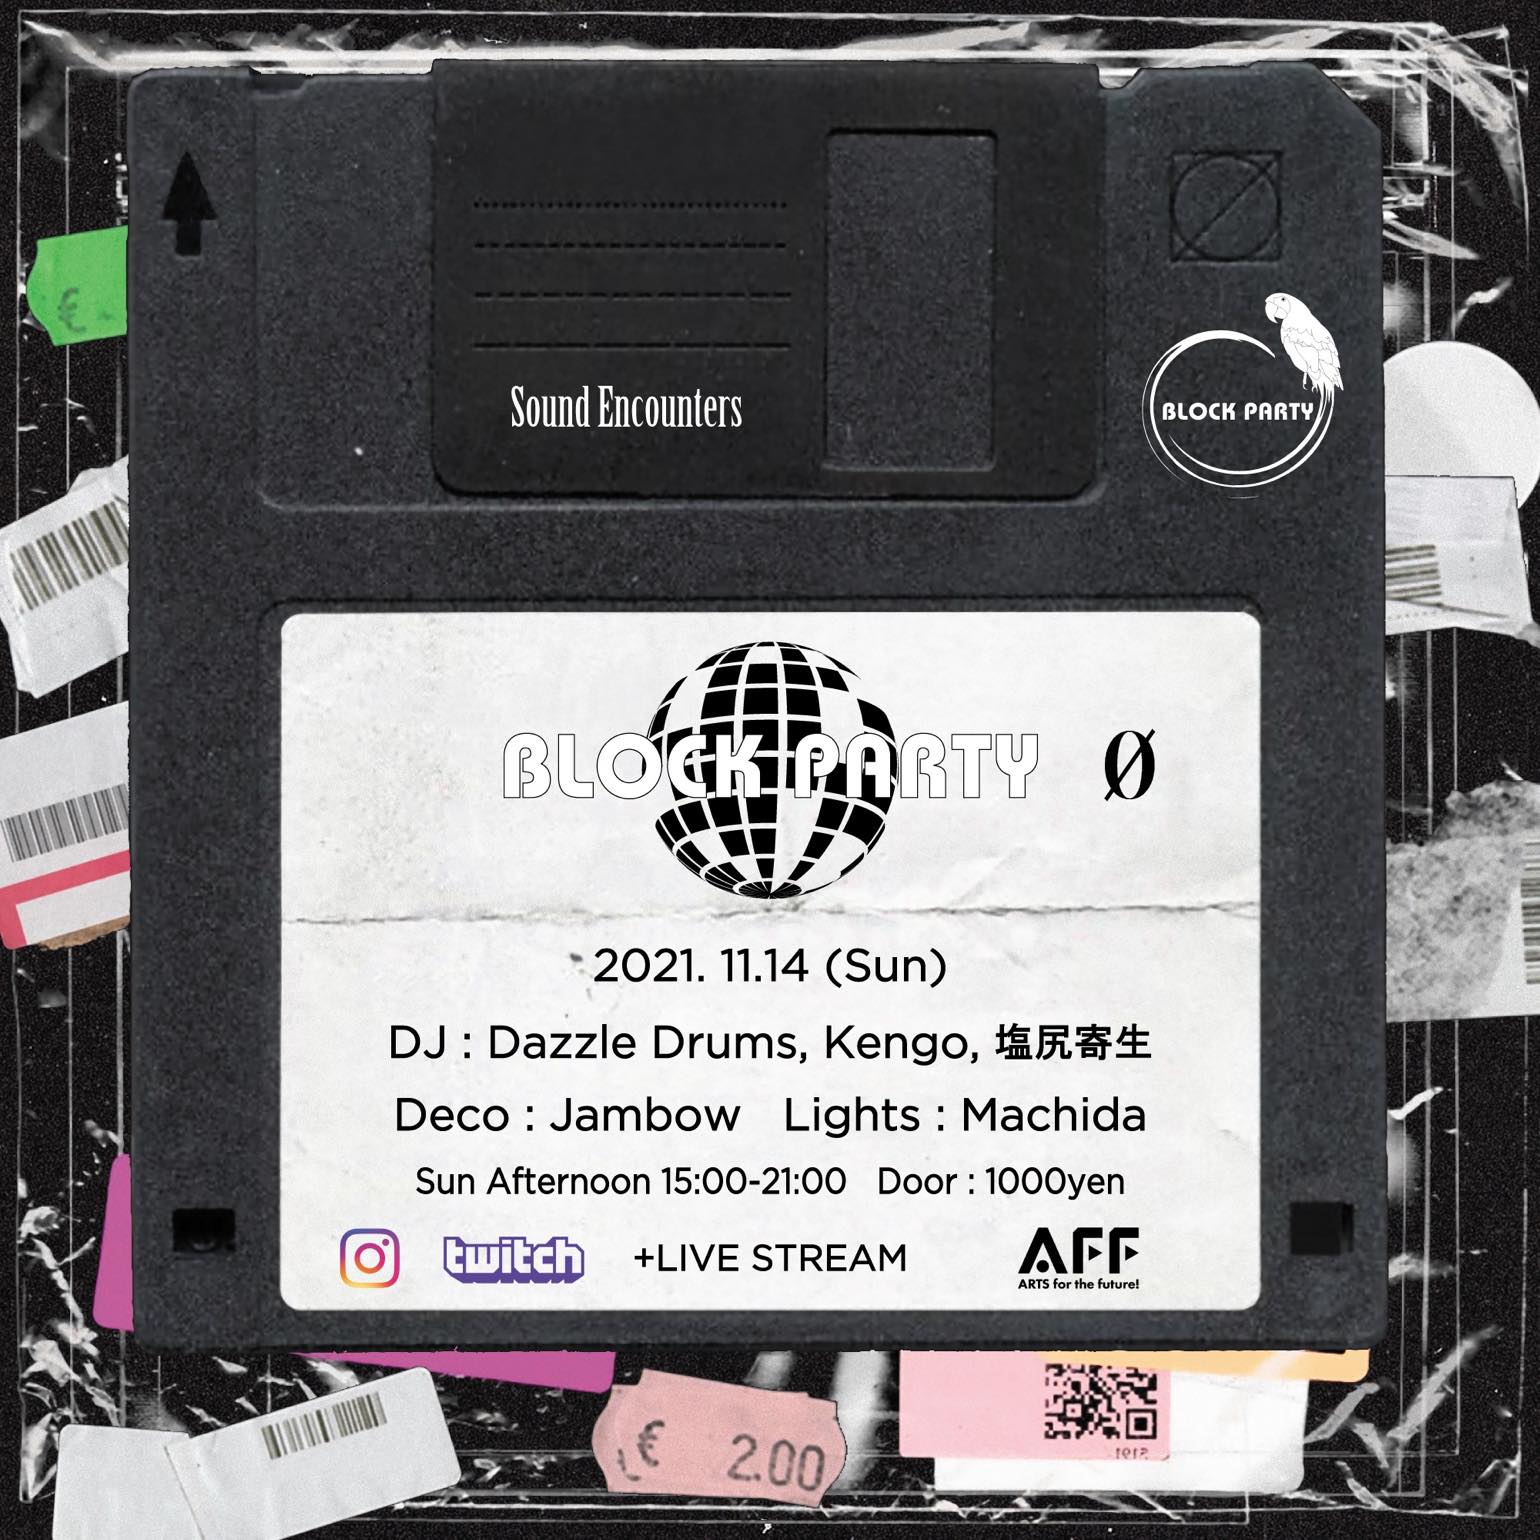 11.14.21 (Sun 15:00-21:00) Block Party “Sound Encounters” + Live Stream @ 0 Zero